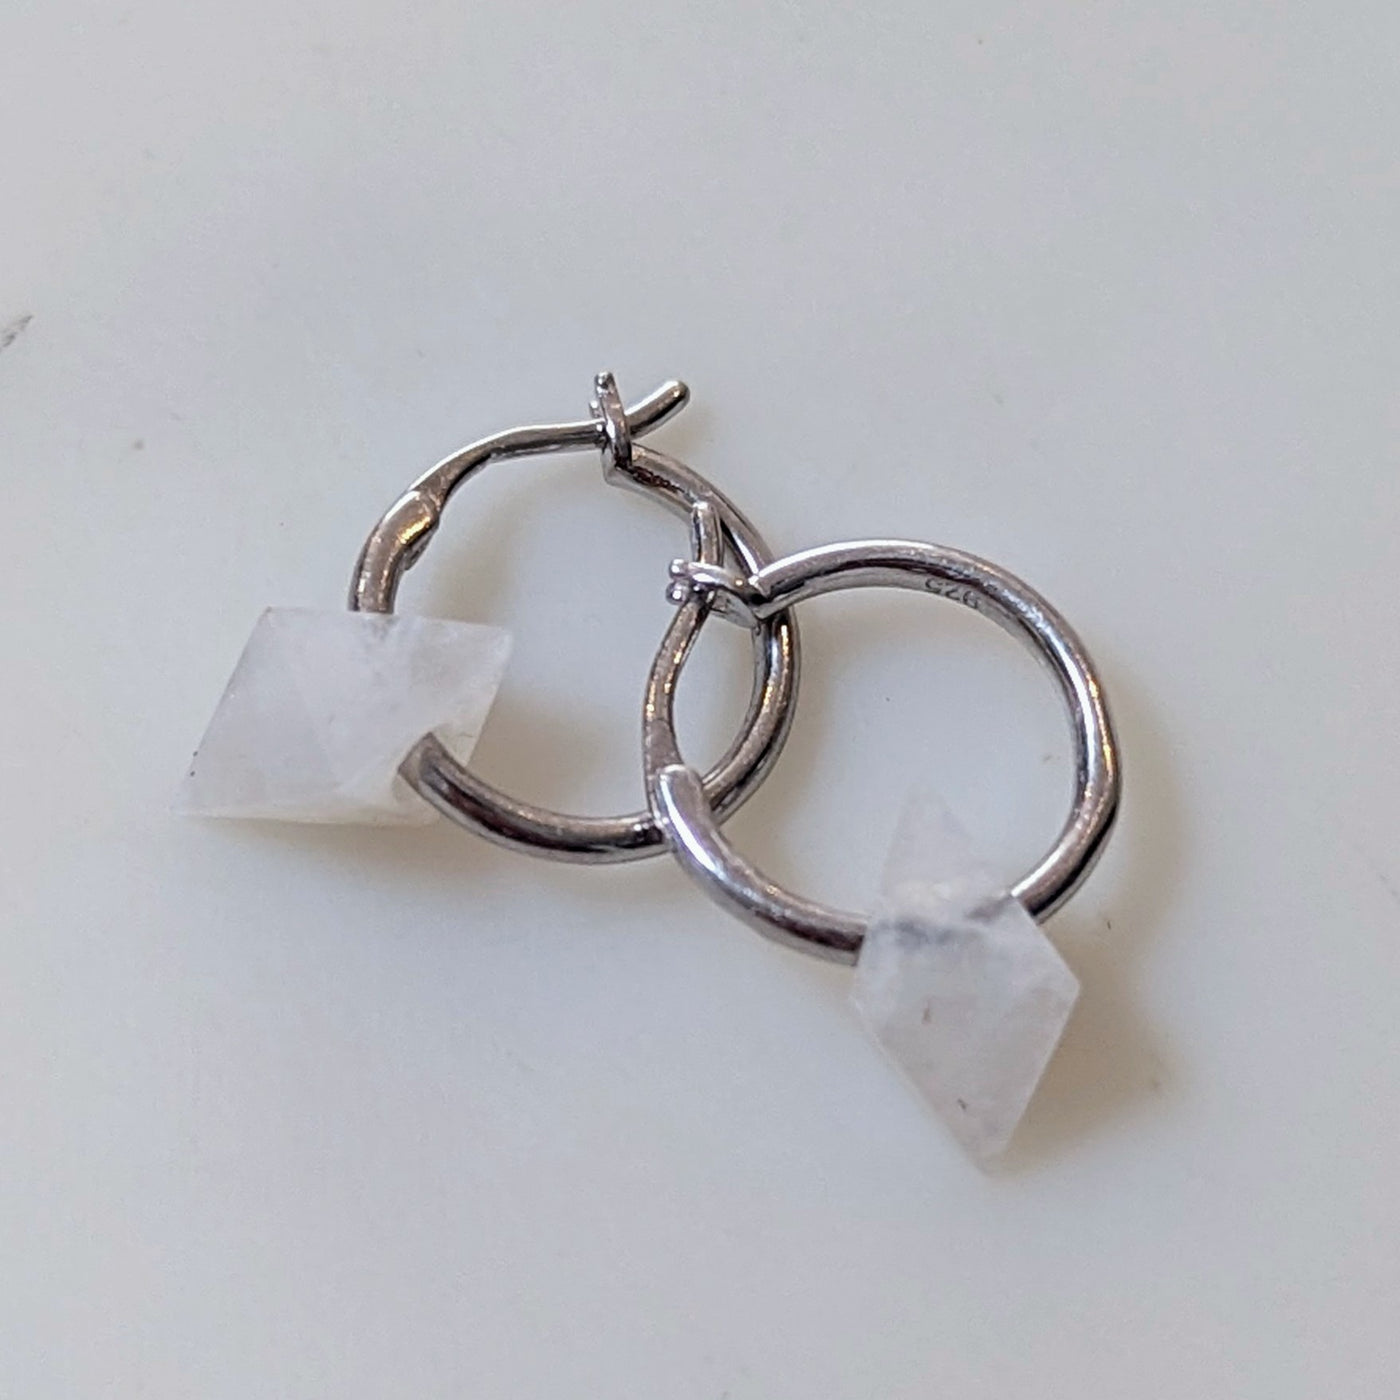 Moonstone octahedron charm sterling silver hoop earrings